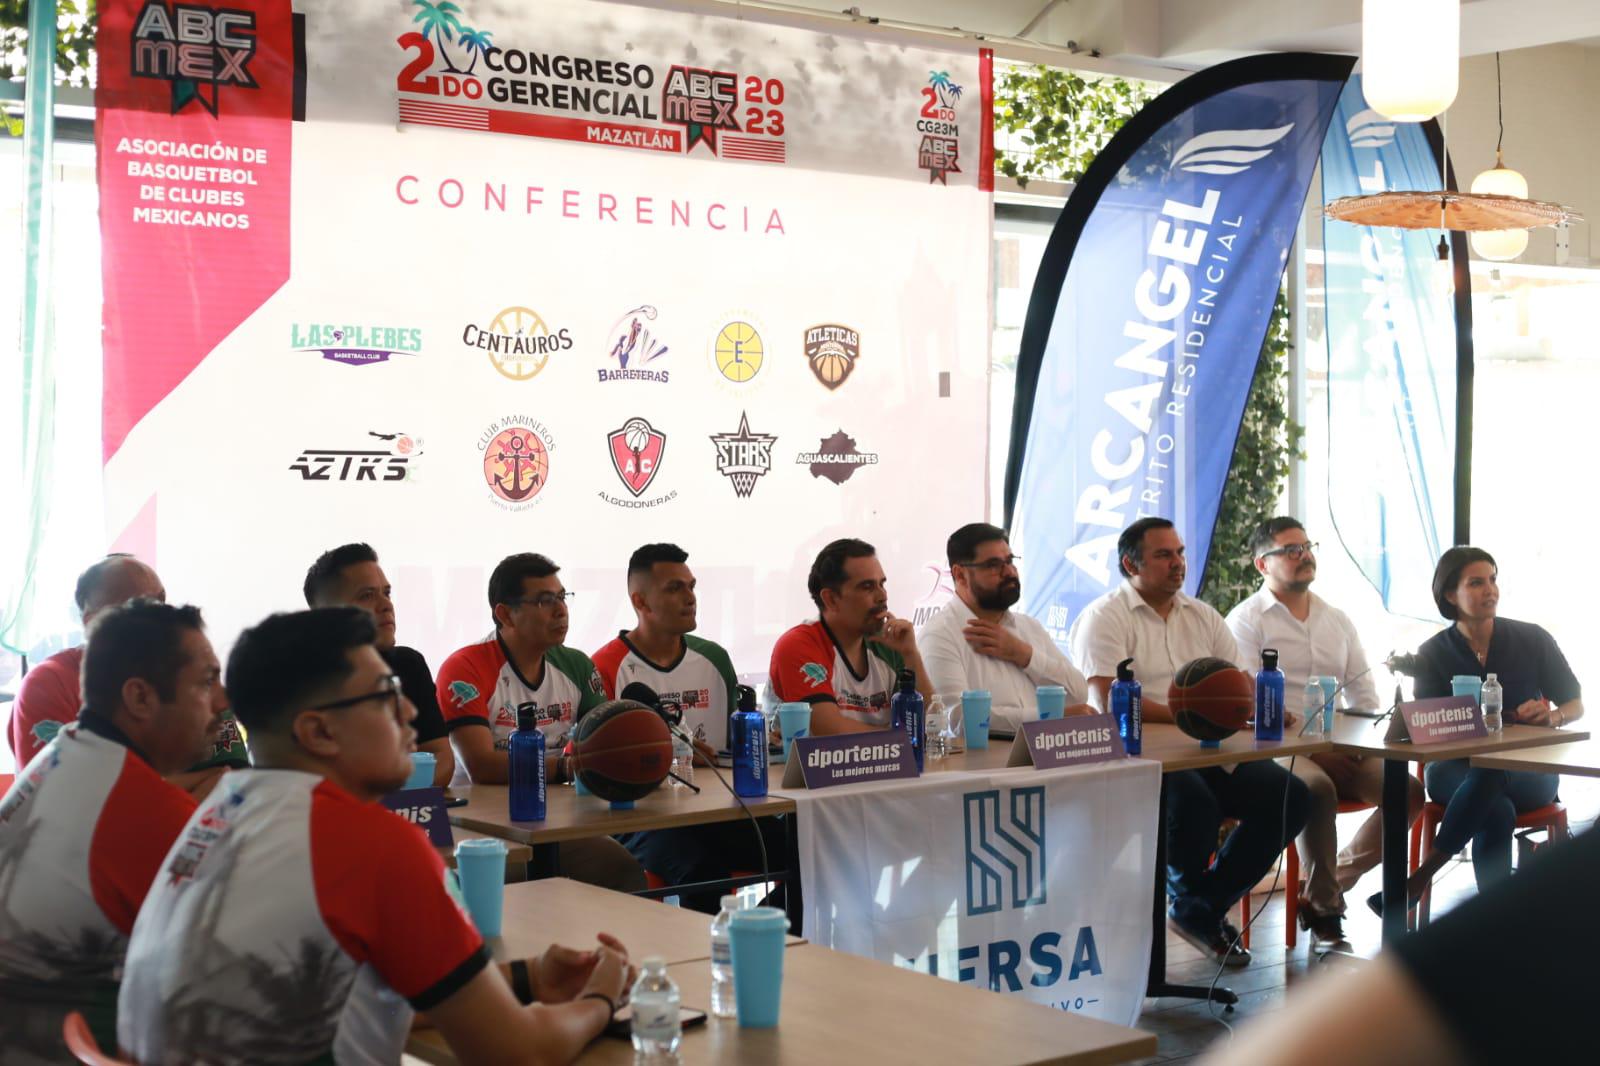 $!Confirman Las Plebes Basketball participación en ABC MEX